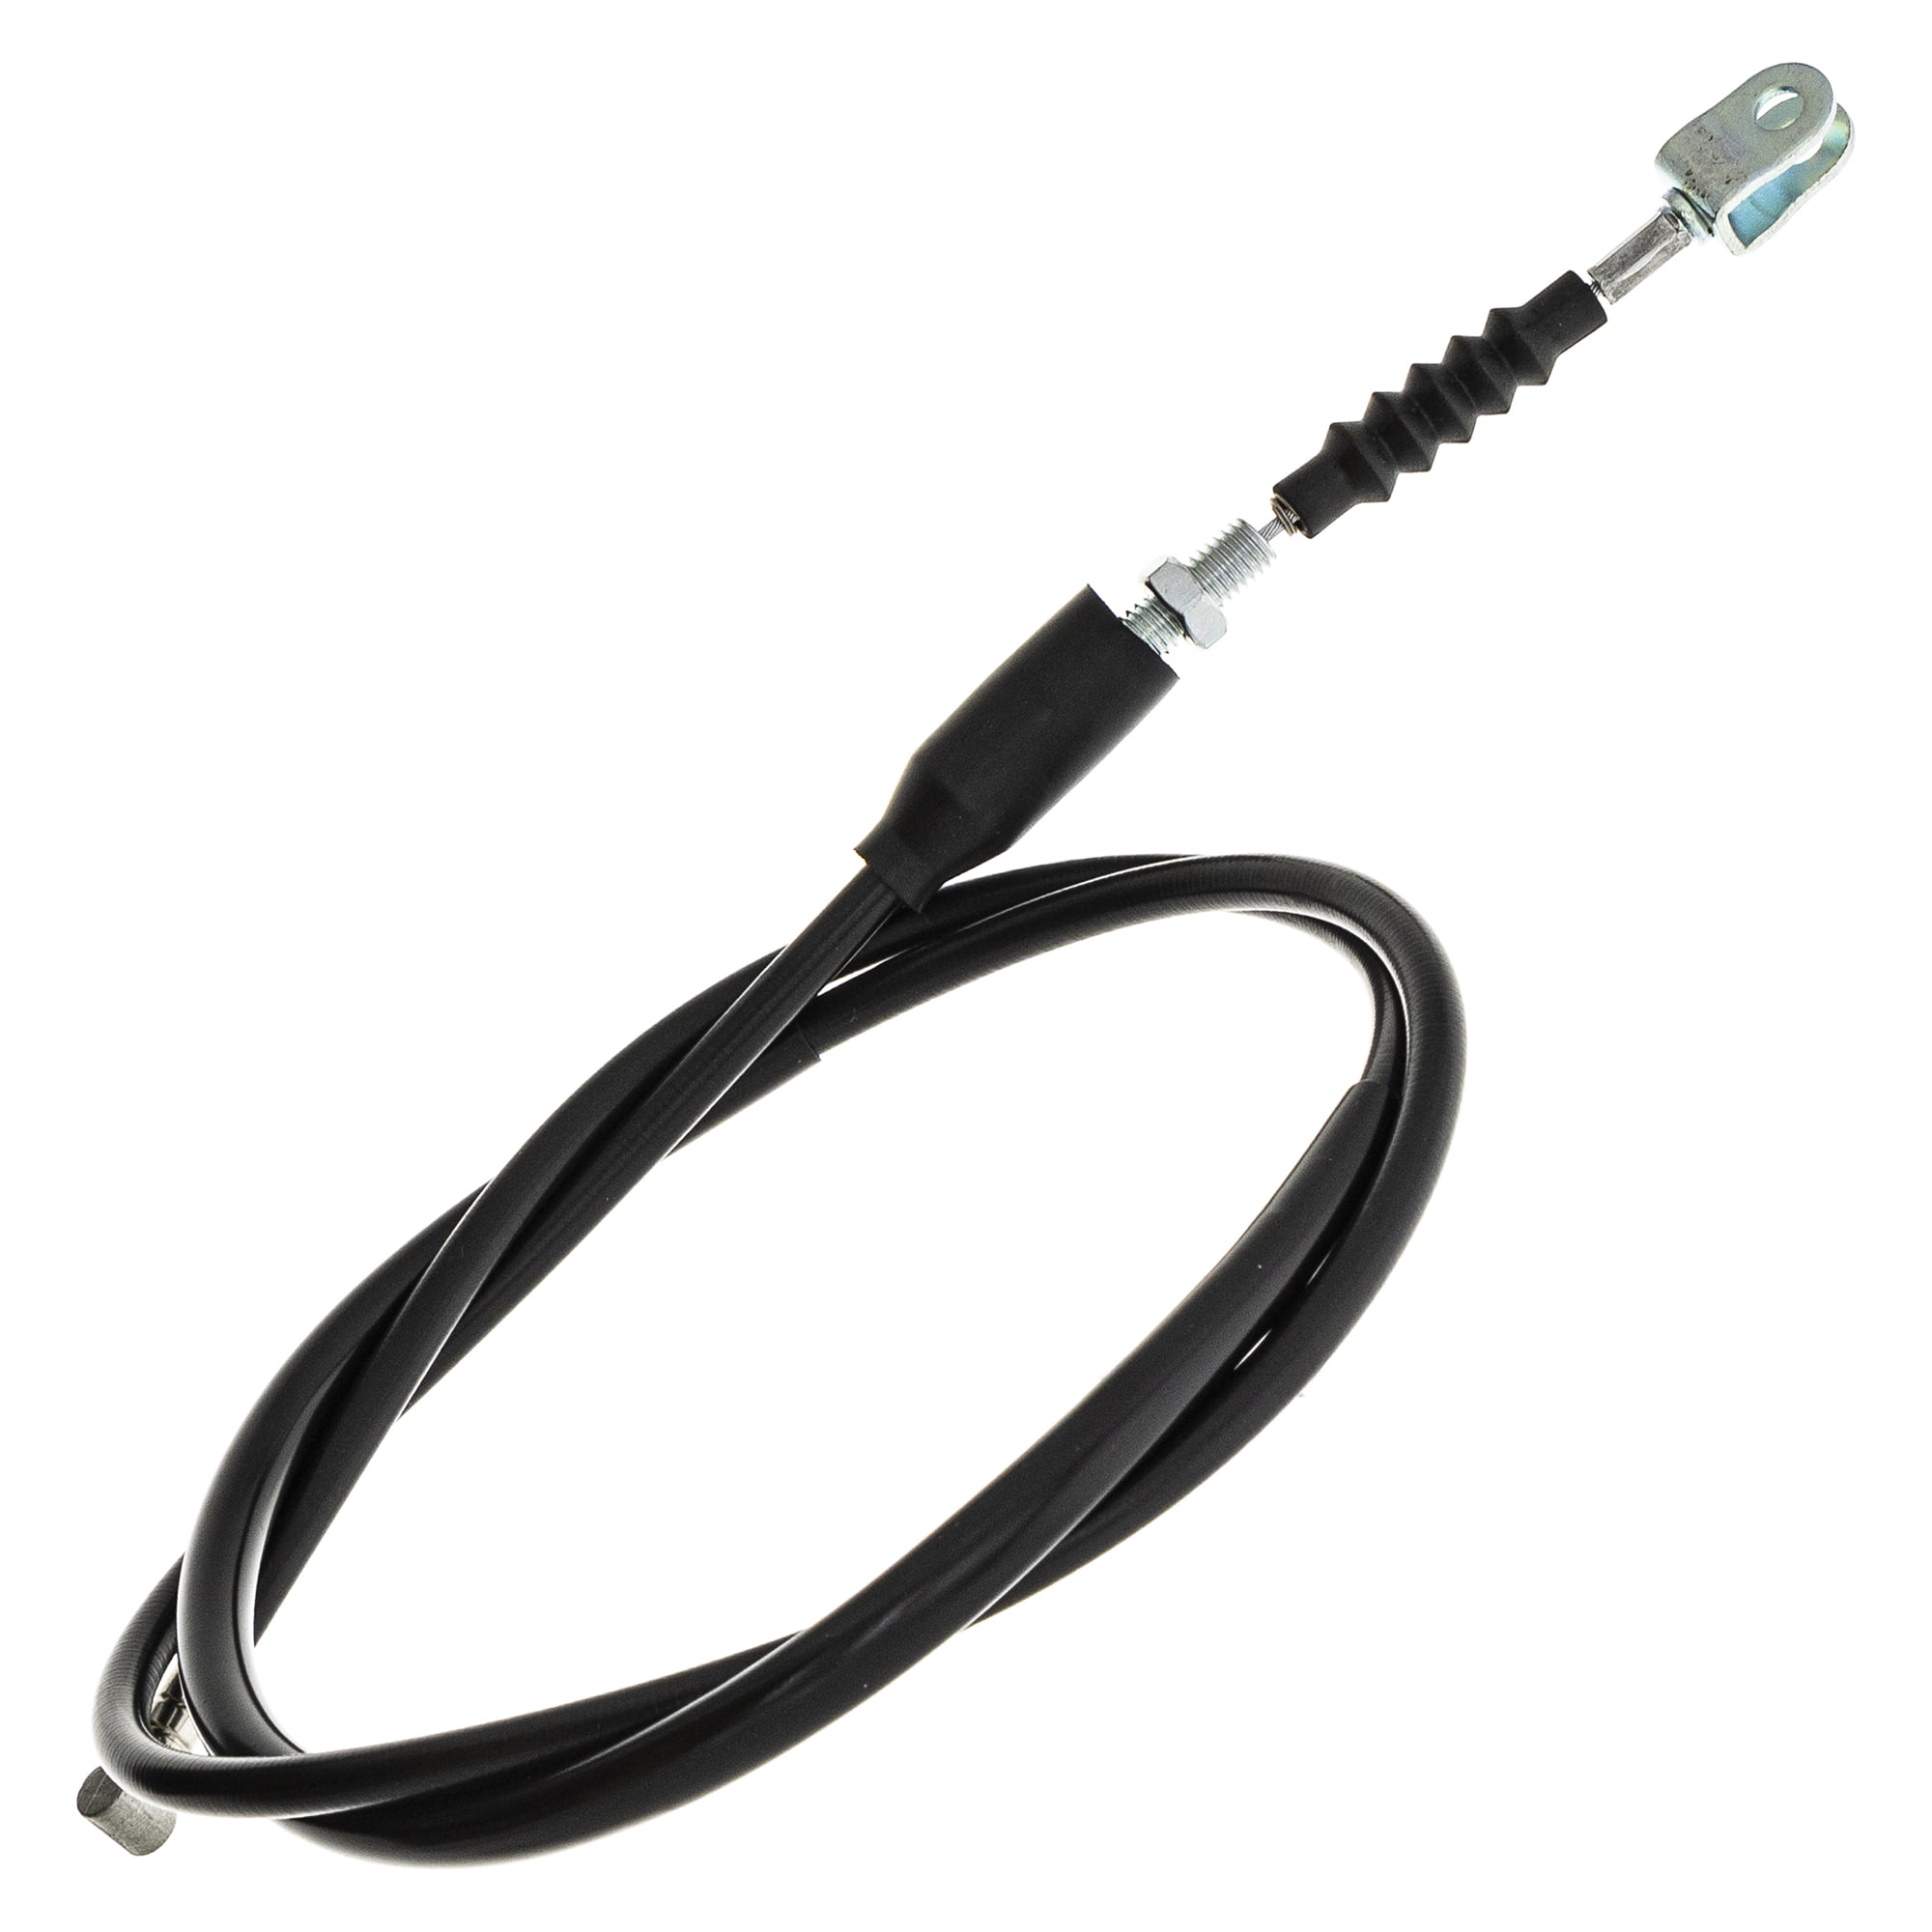 NICHE Clutch Cable for Suzuki GS1100E GS1100ES GS1150E GS750E GS750T 58200-45401 58200-00A20 